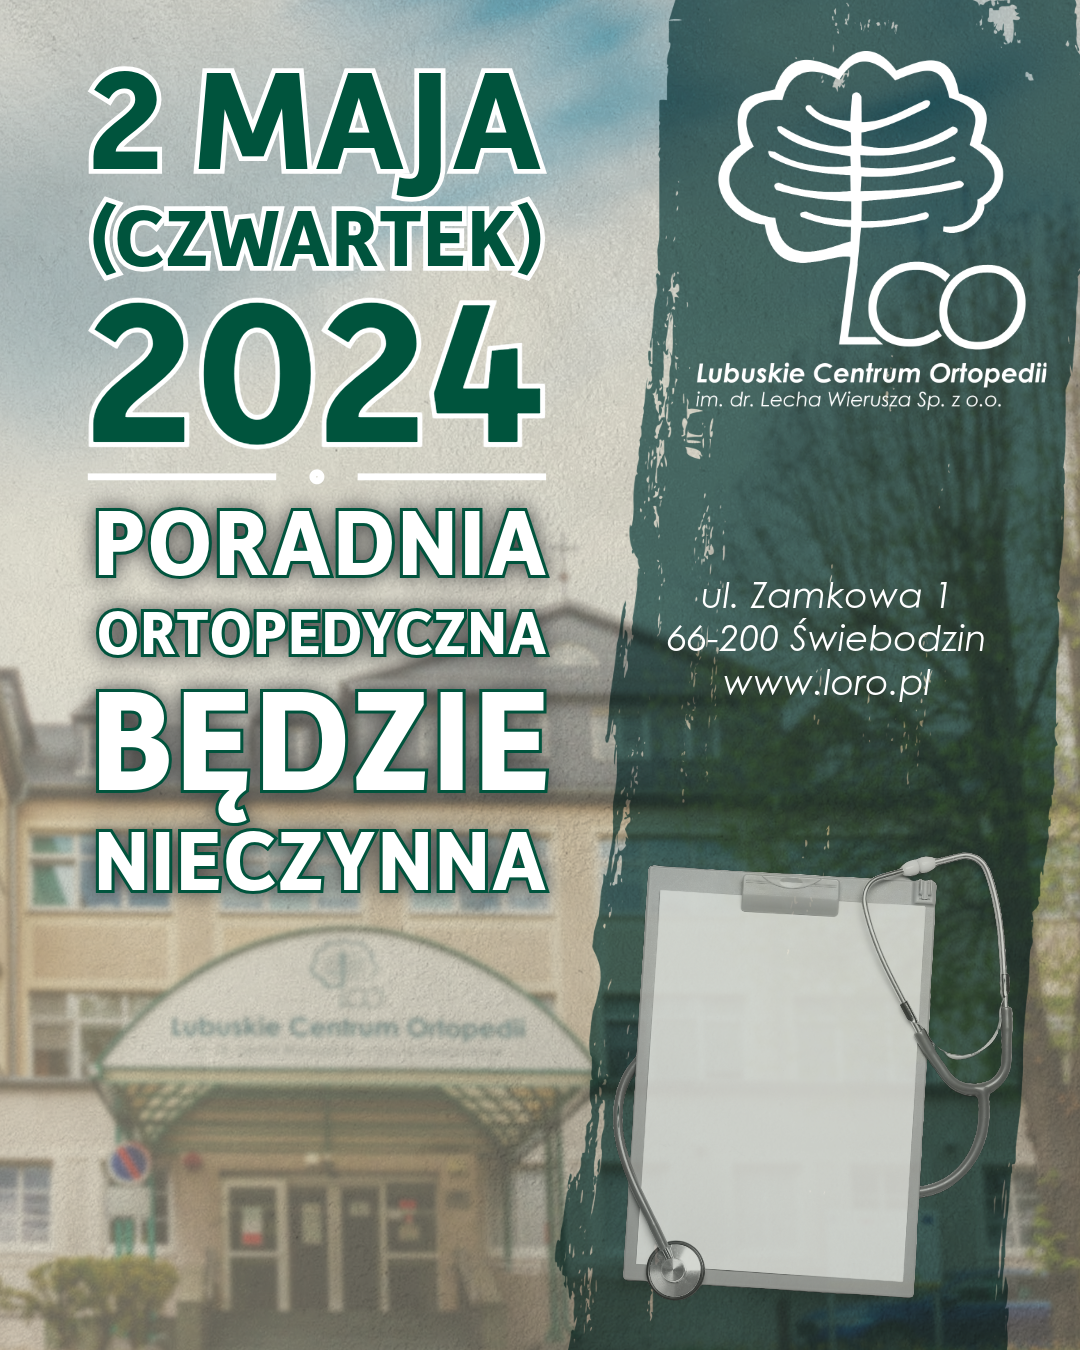 Read more about the article 2 maja 2024 poradnia ortopedyczna będzie nieczynna